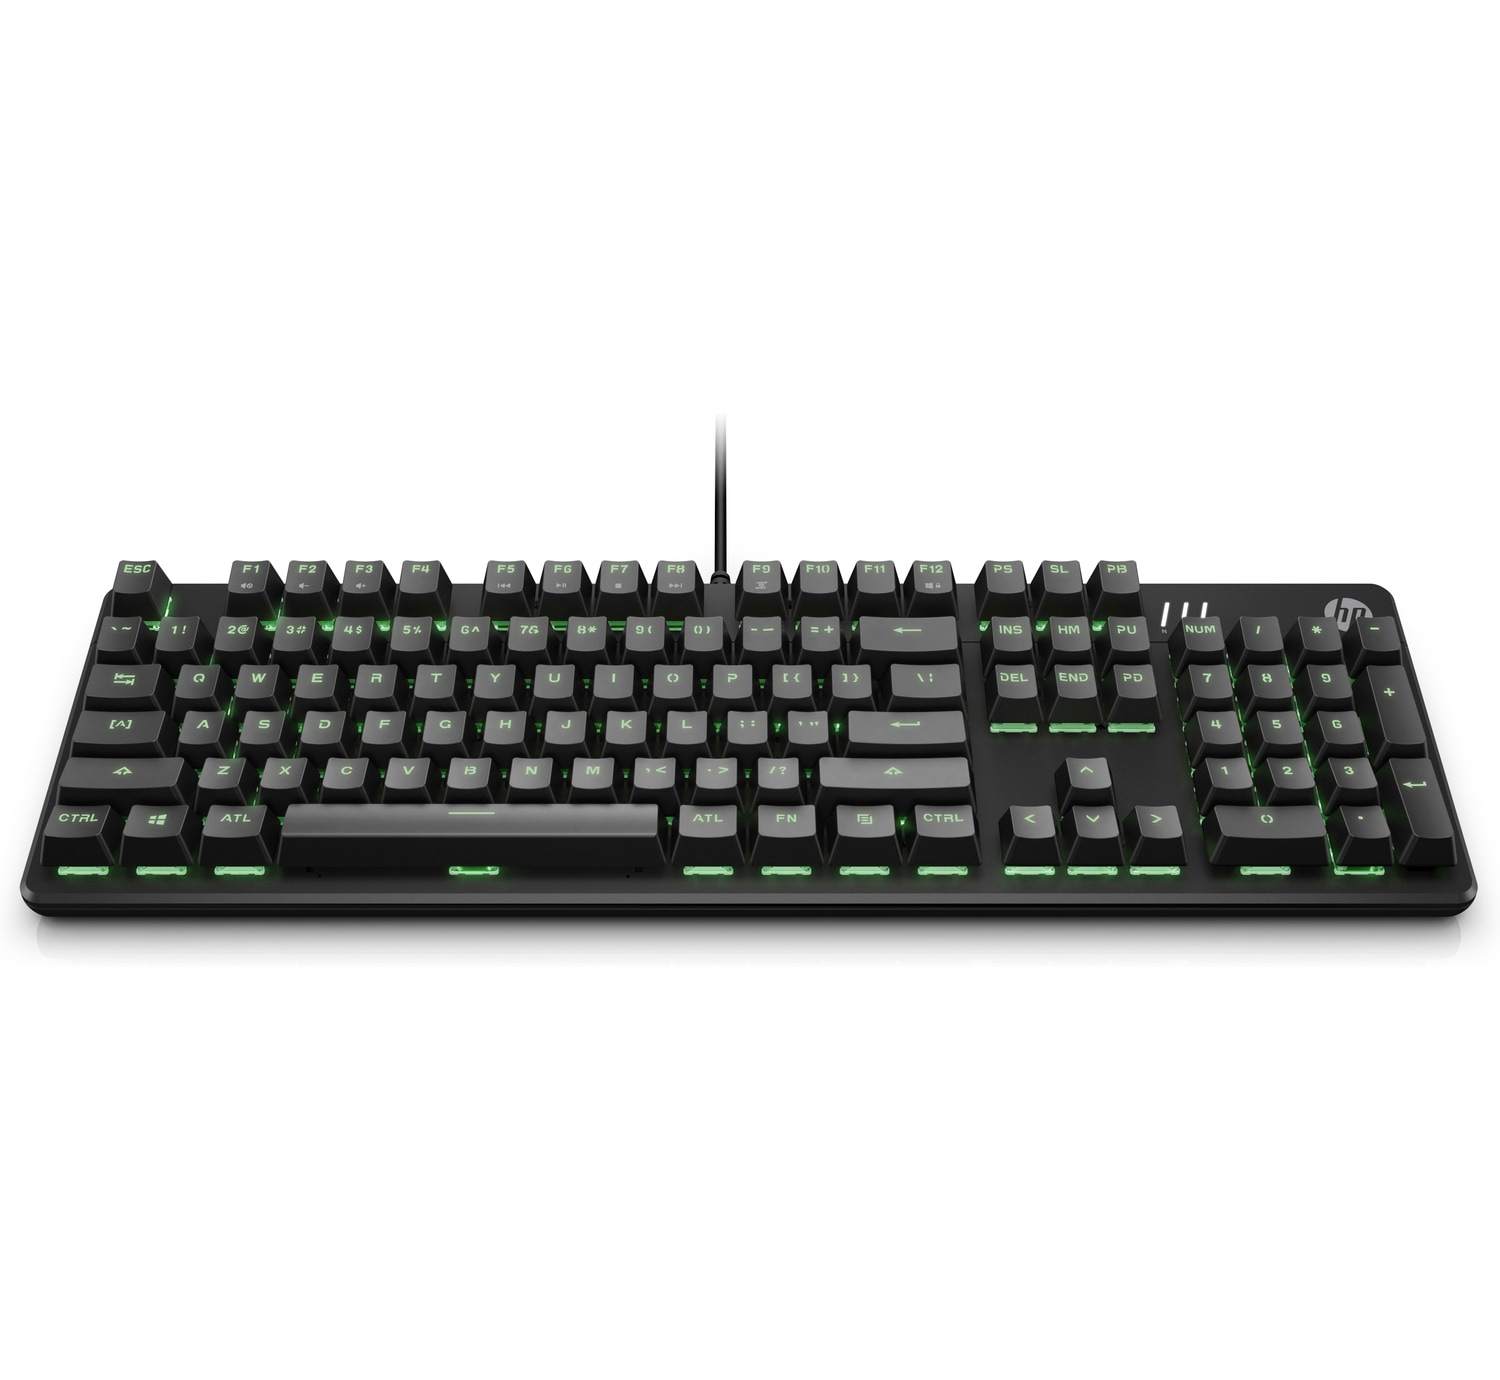 HP Pavilion 500 Black Gaming Keyboard